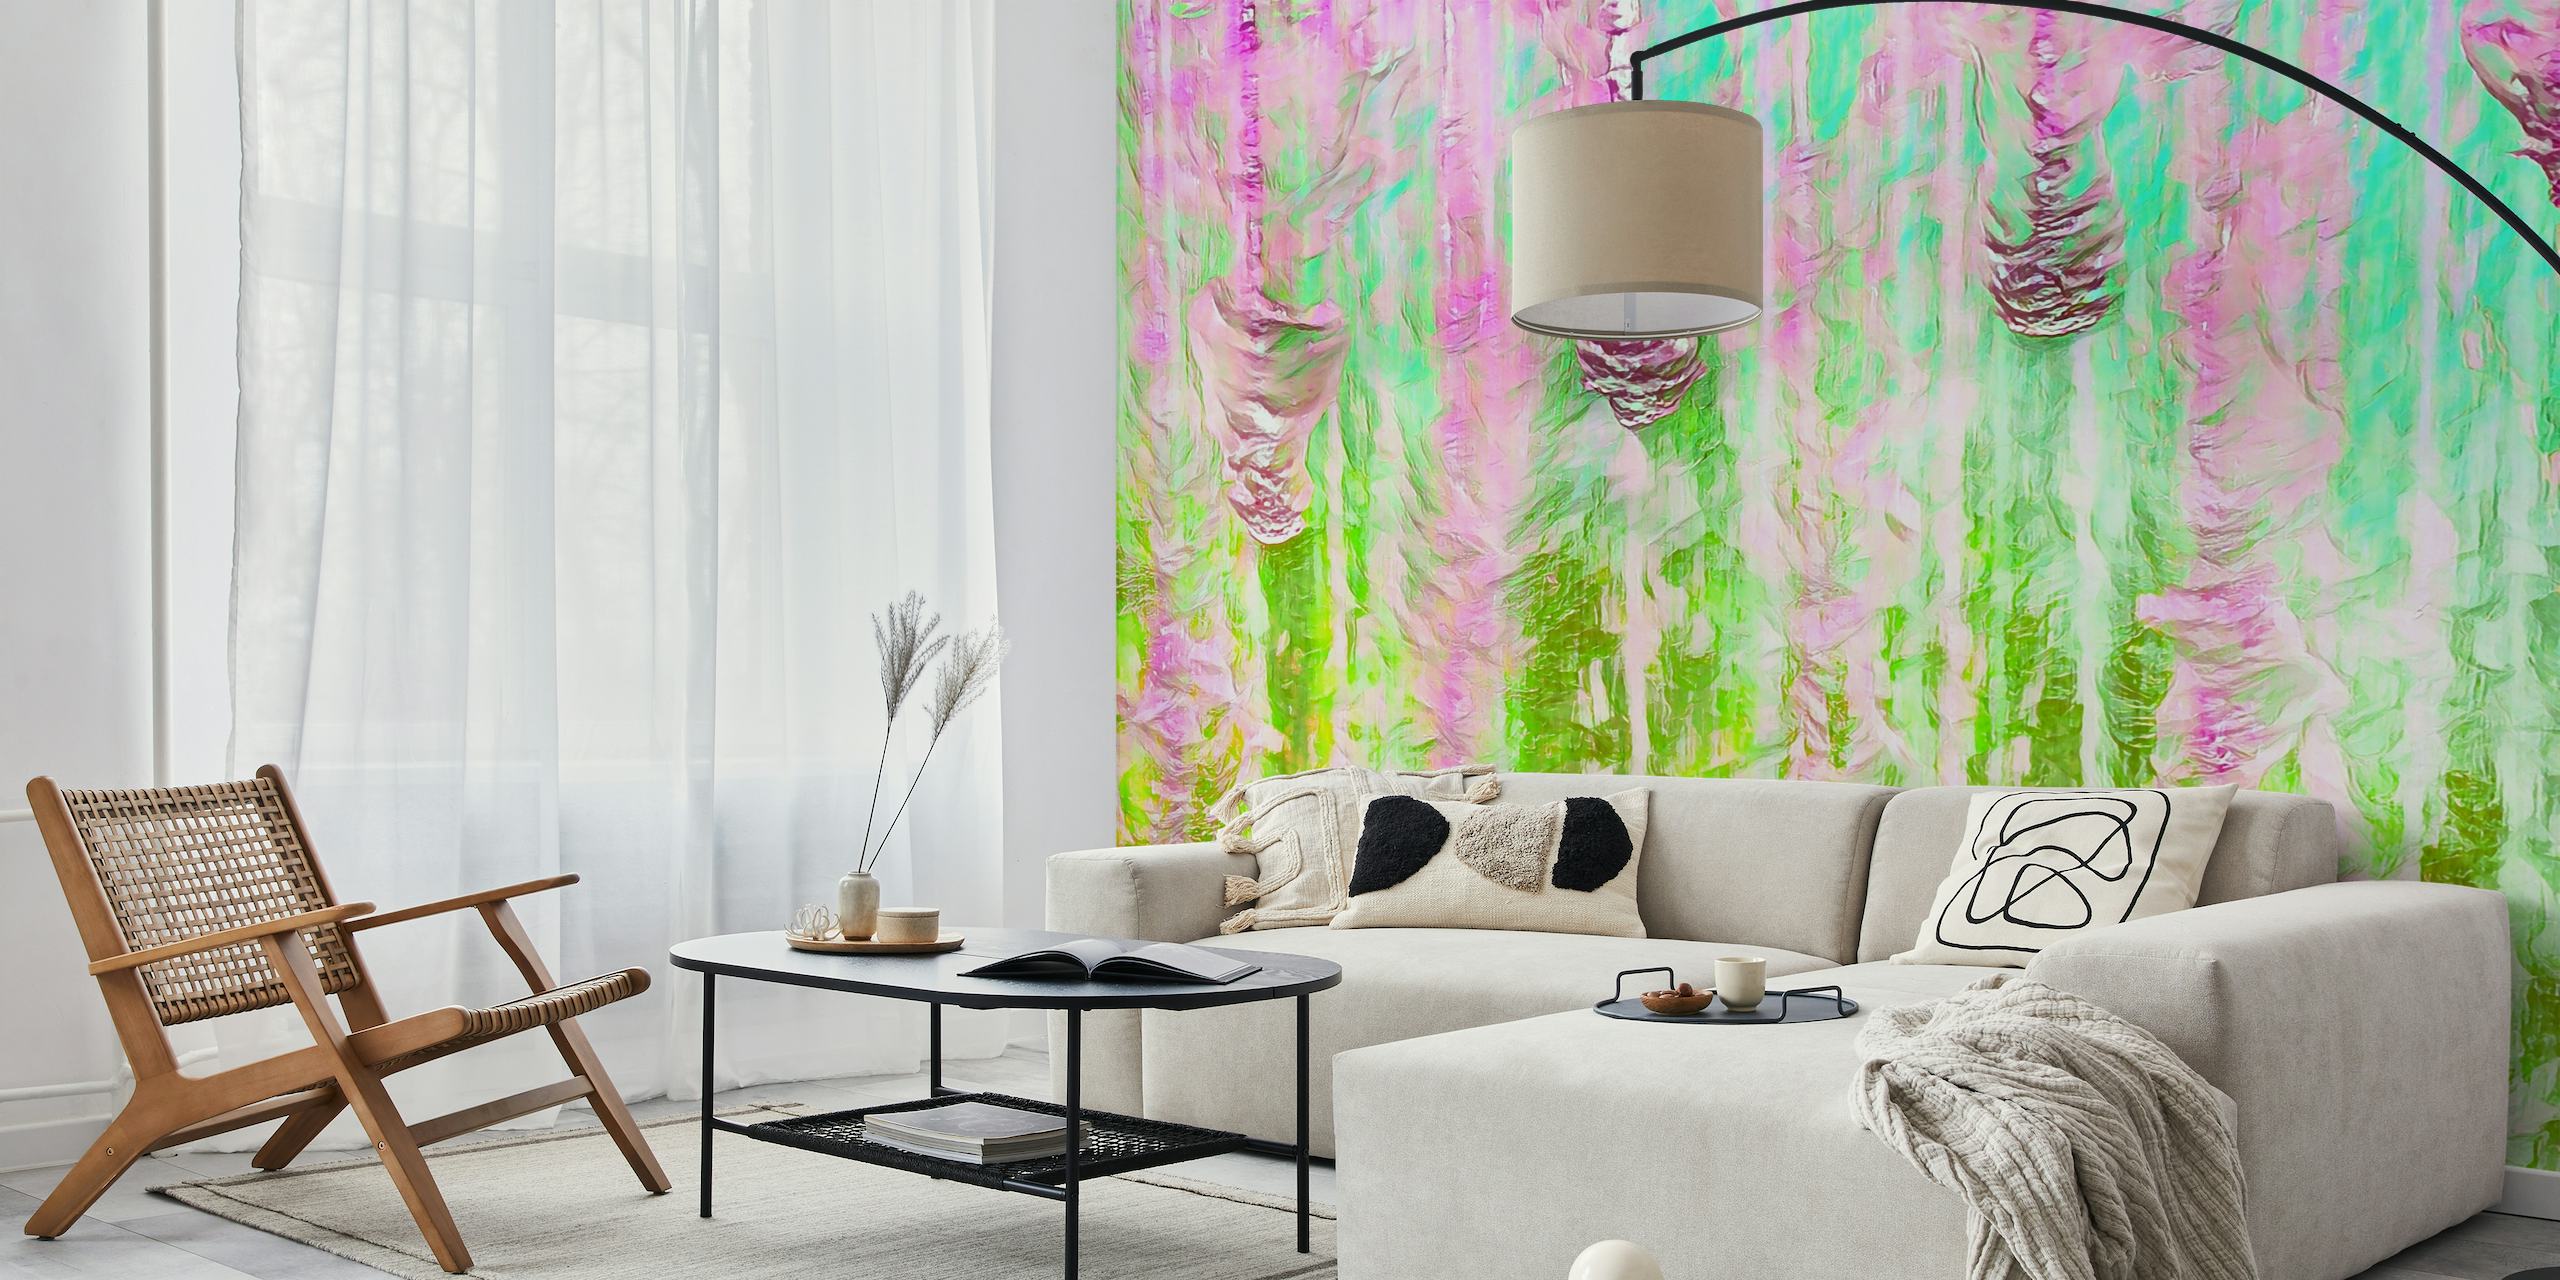 Papier peint mural abstrait coloré Happy Liquid Paint Flow avec des roses et des verts vibrants, créant un effet aquarelle fluide.